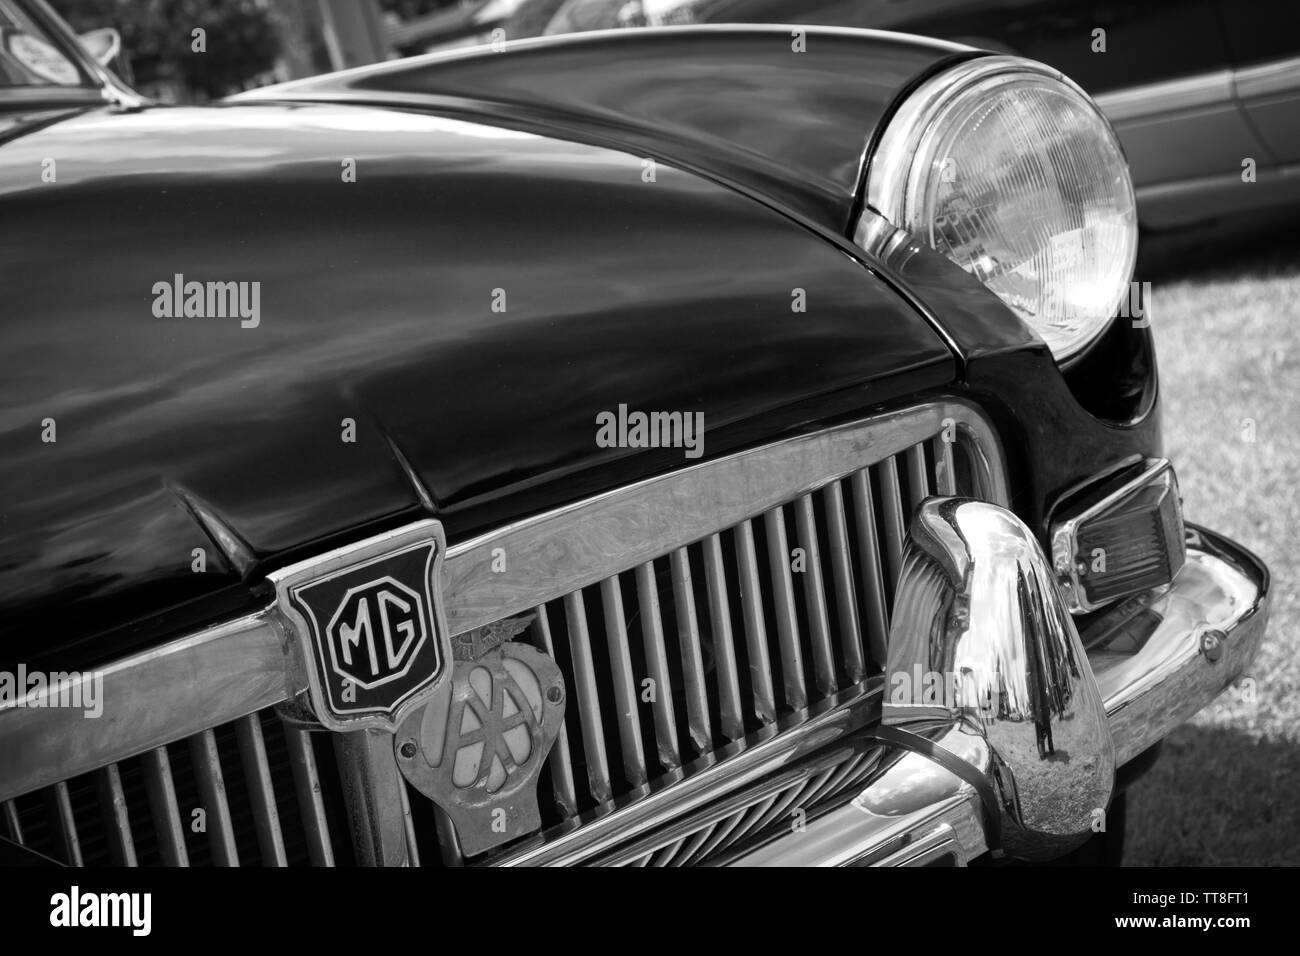 Parte anteriore sinistra di un classico vintage MG auto sportiva che mostra il badge, griglia del radiatore, il faro e il paraurti cromato dettaglio eseguita in bianco e nero. Foto Stock